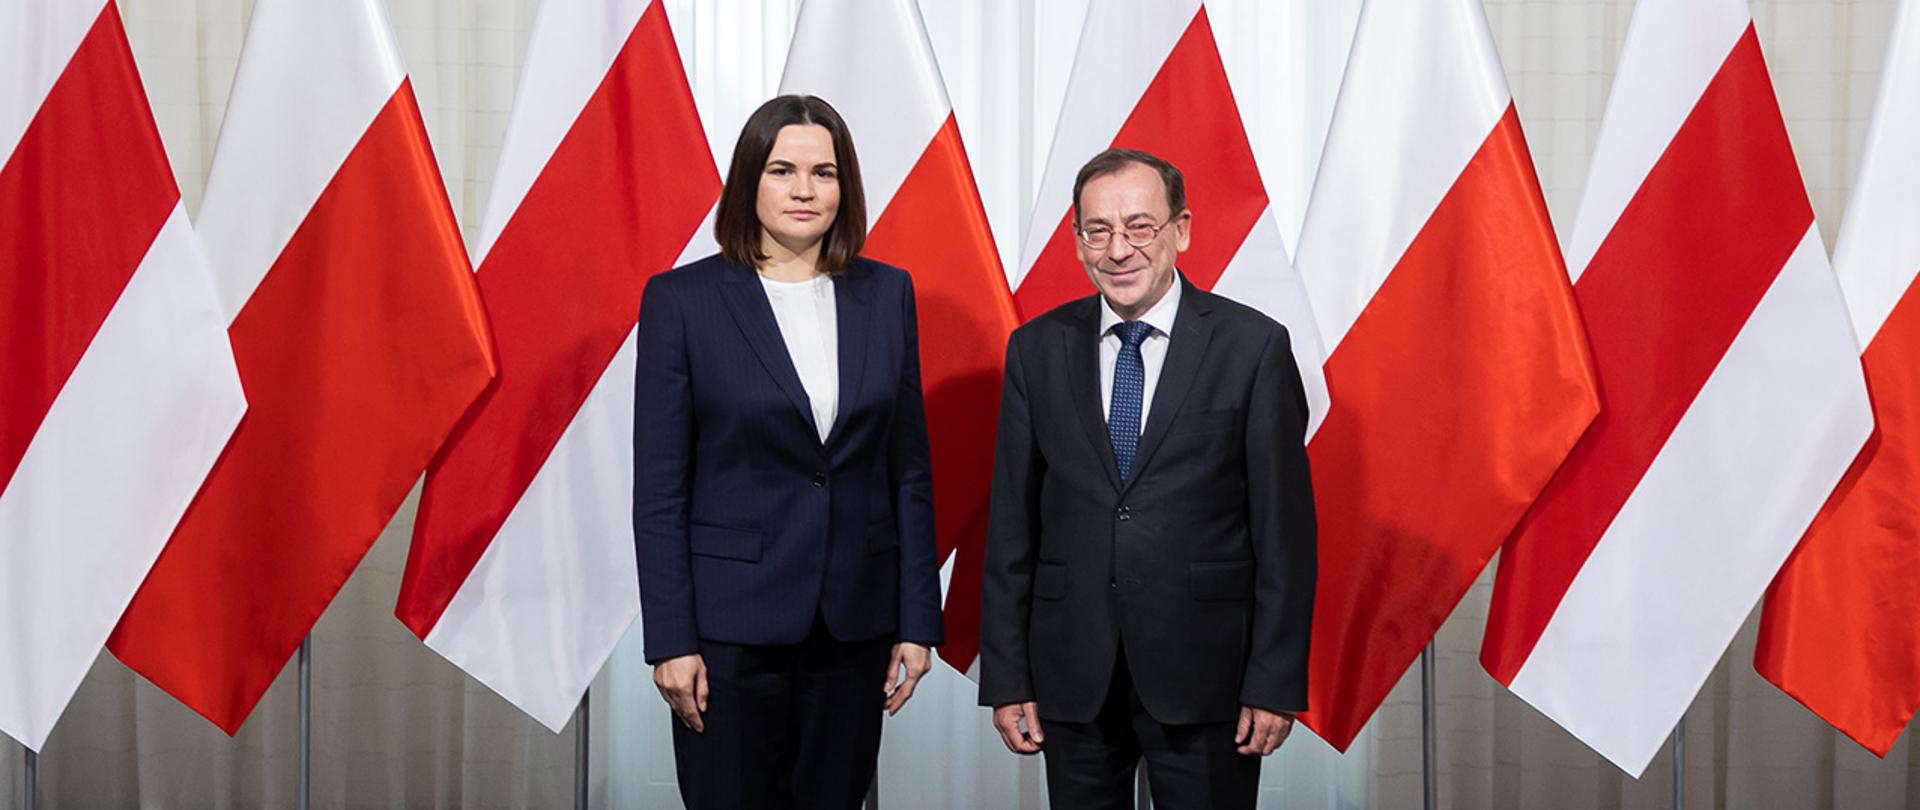 Na zdjęciu widać ministra Mariusza Kamińskiego i Swietłanę Cichanouską